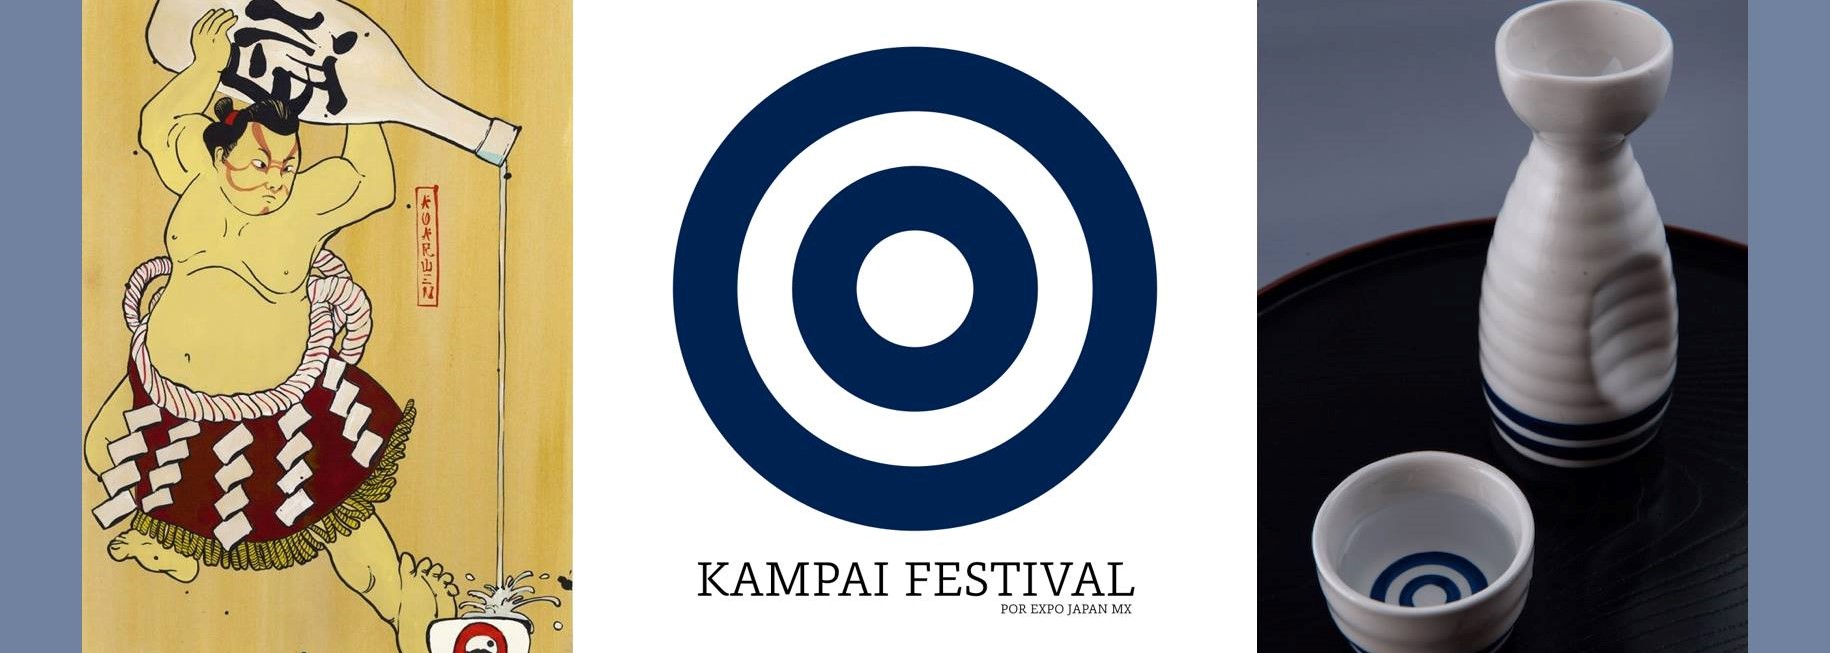 El Kampai Festival traerá lo mejor de Japón a la CDMX